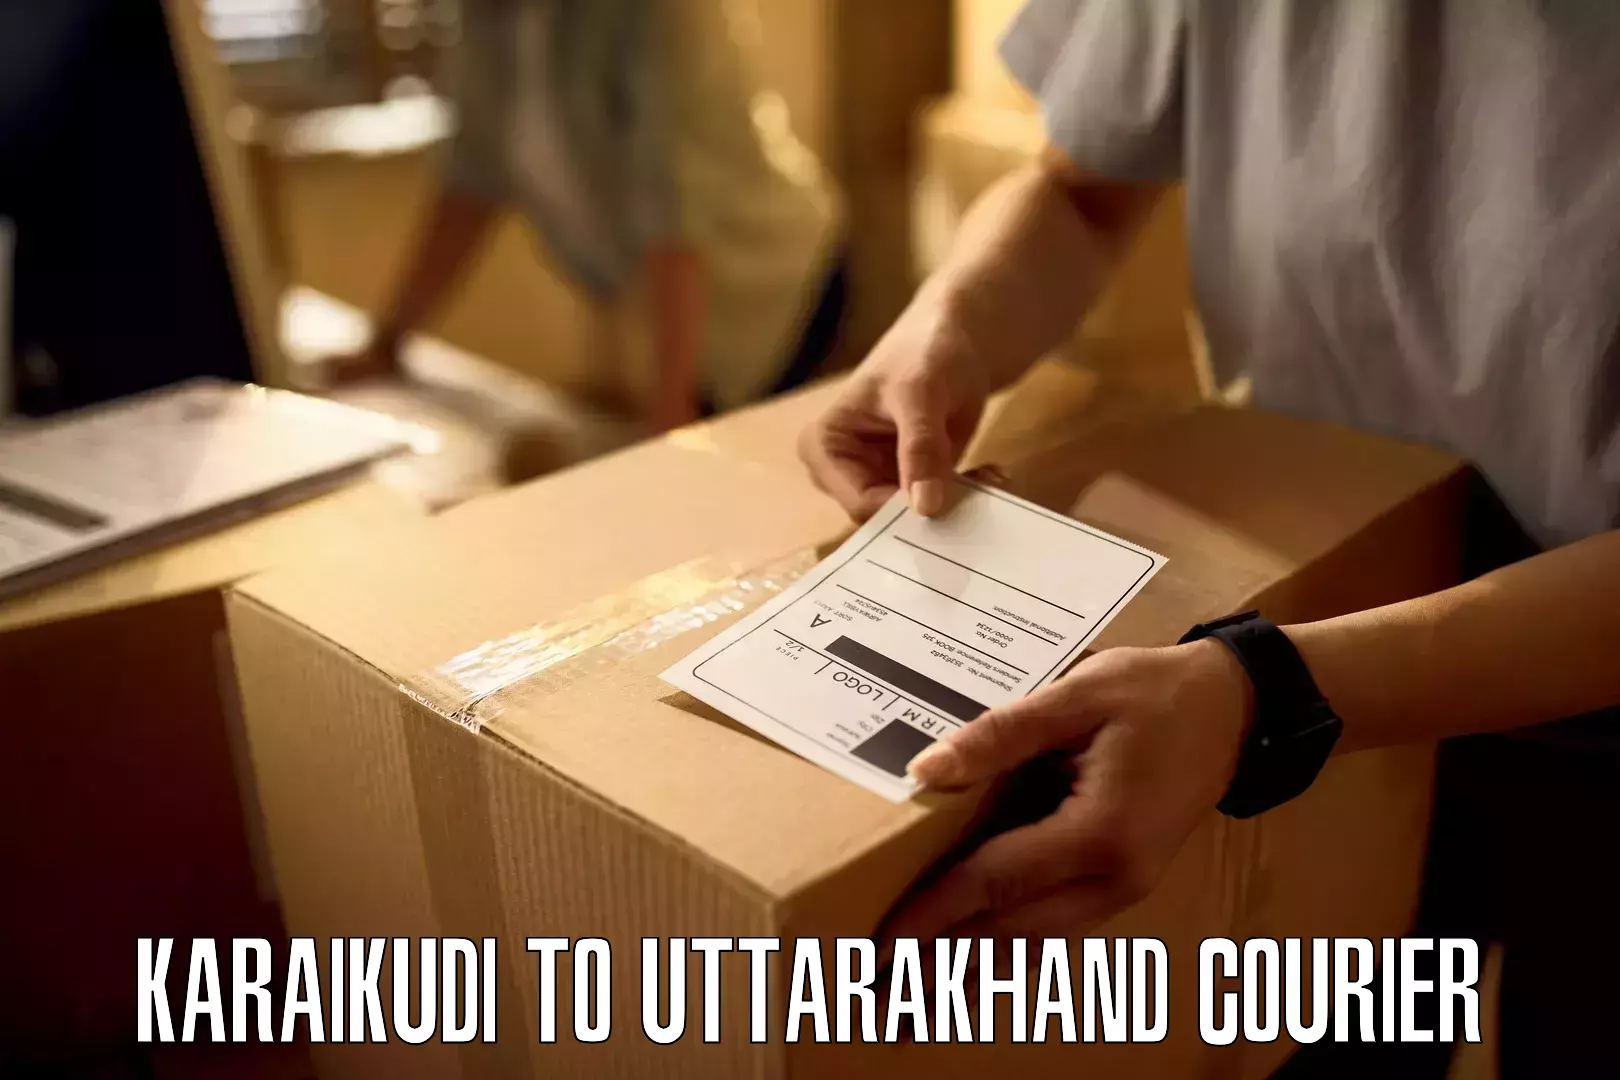 Urgent courier needs Karaikudi to Rishikesh